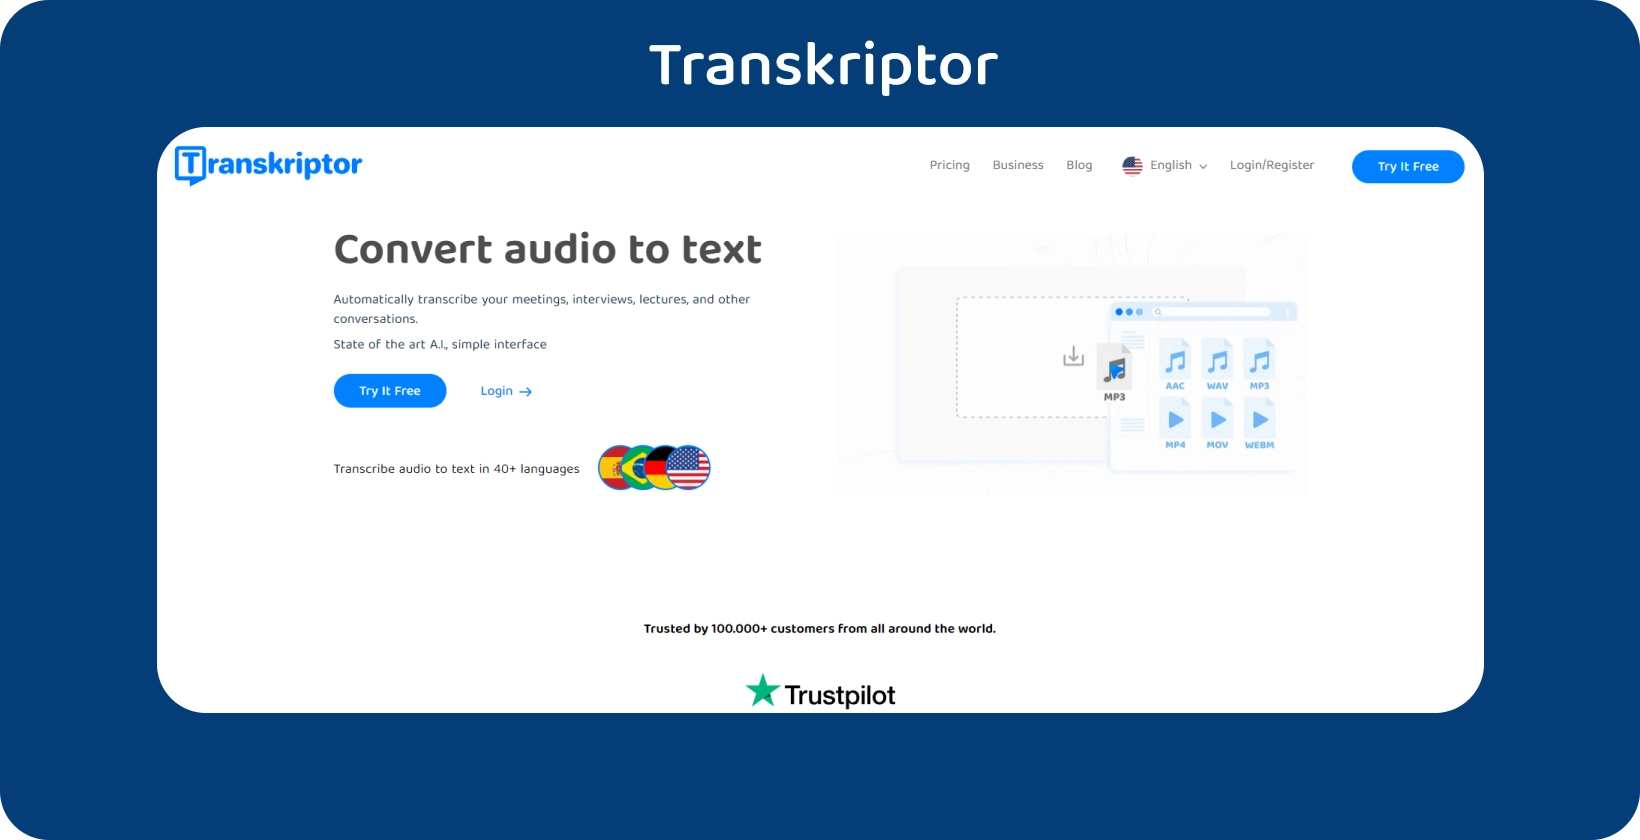 Transkriptor honlap egyértelmű cselekvésre ösztönzéssel, hang-szöveg átírási szolgáltatásokat kínálva.